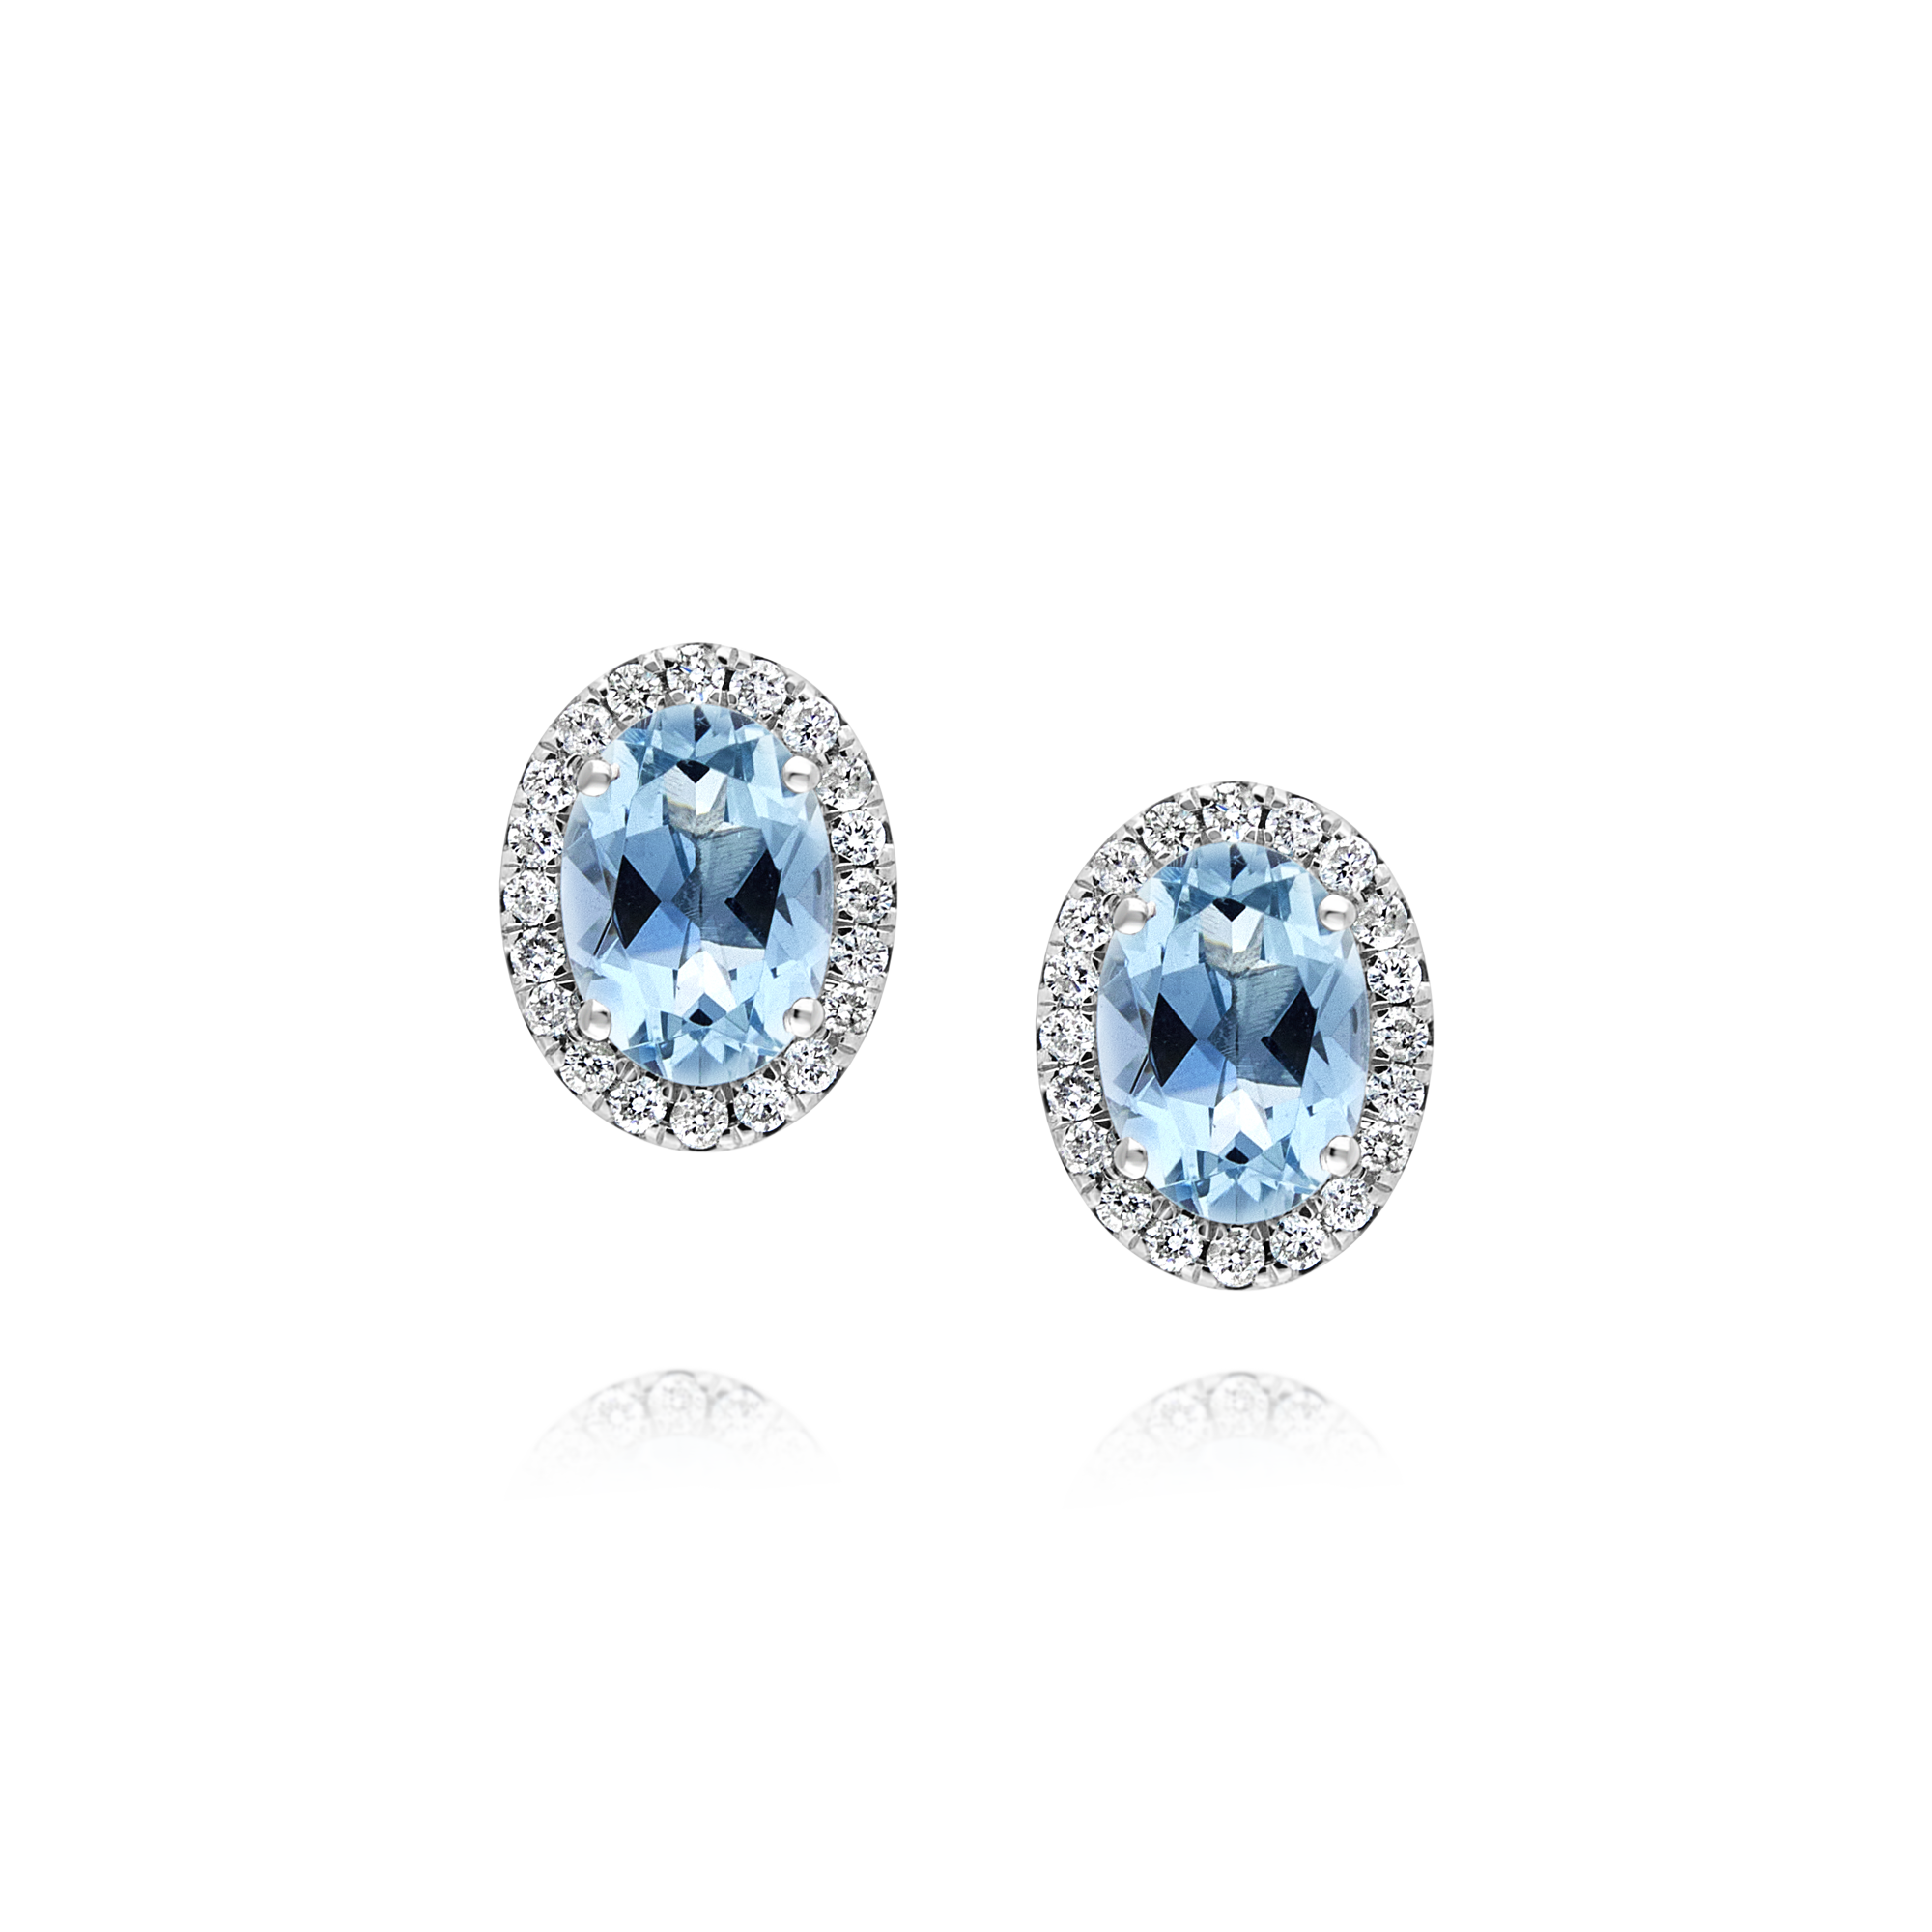 Aquamarine and Diamond Oval Stud Earrings